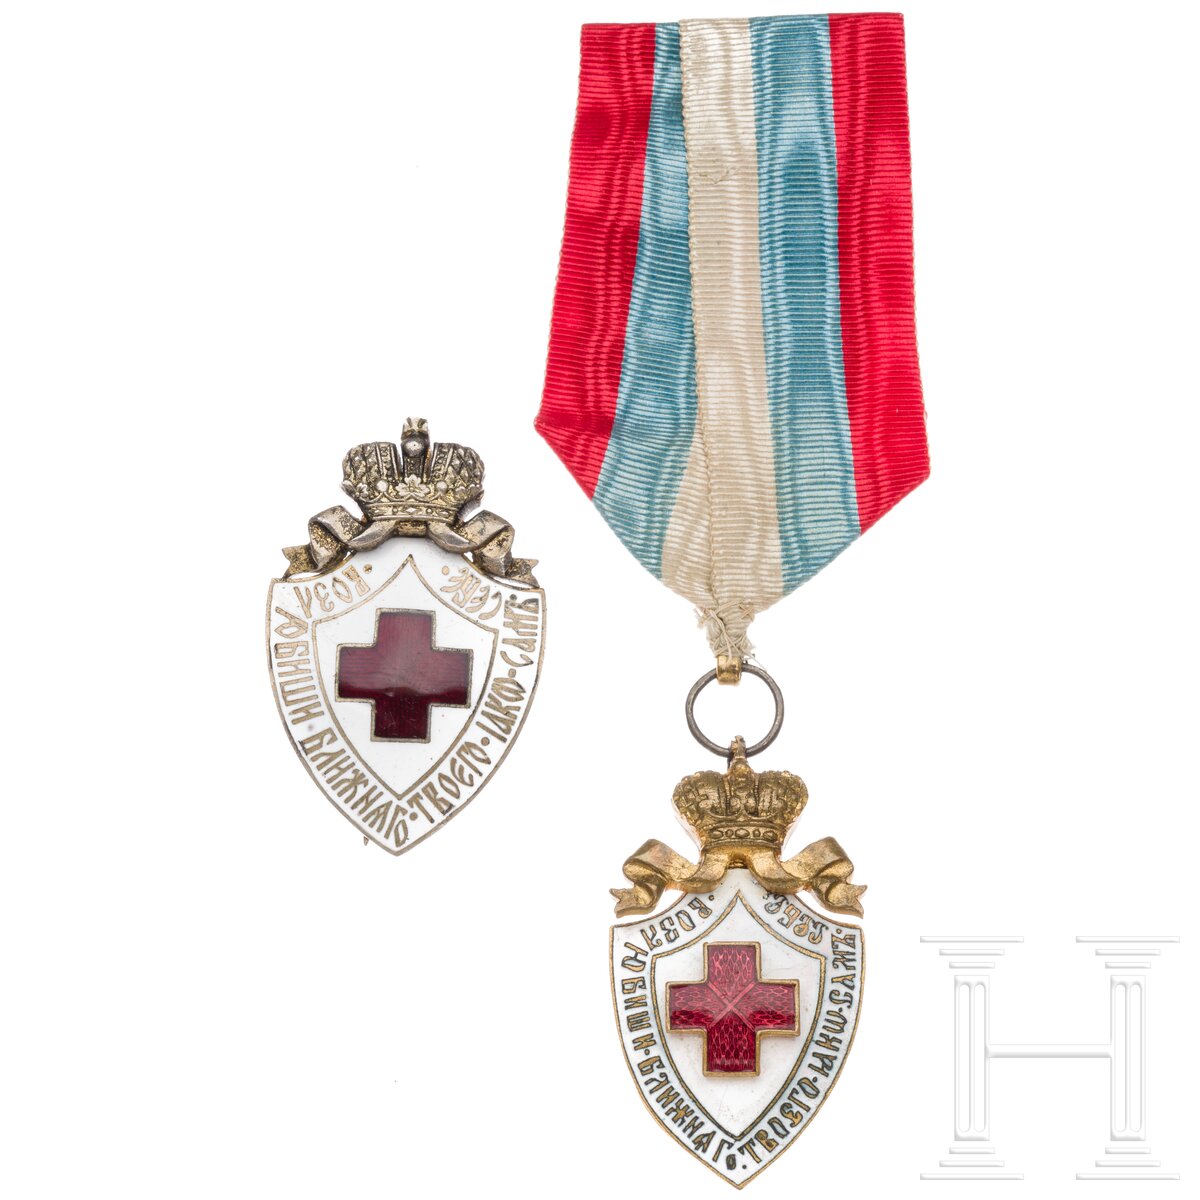 Zwei Abzeichen der Gesellschaft des Russischen Rotes Kreuzes, um 1900